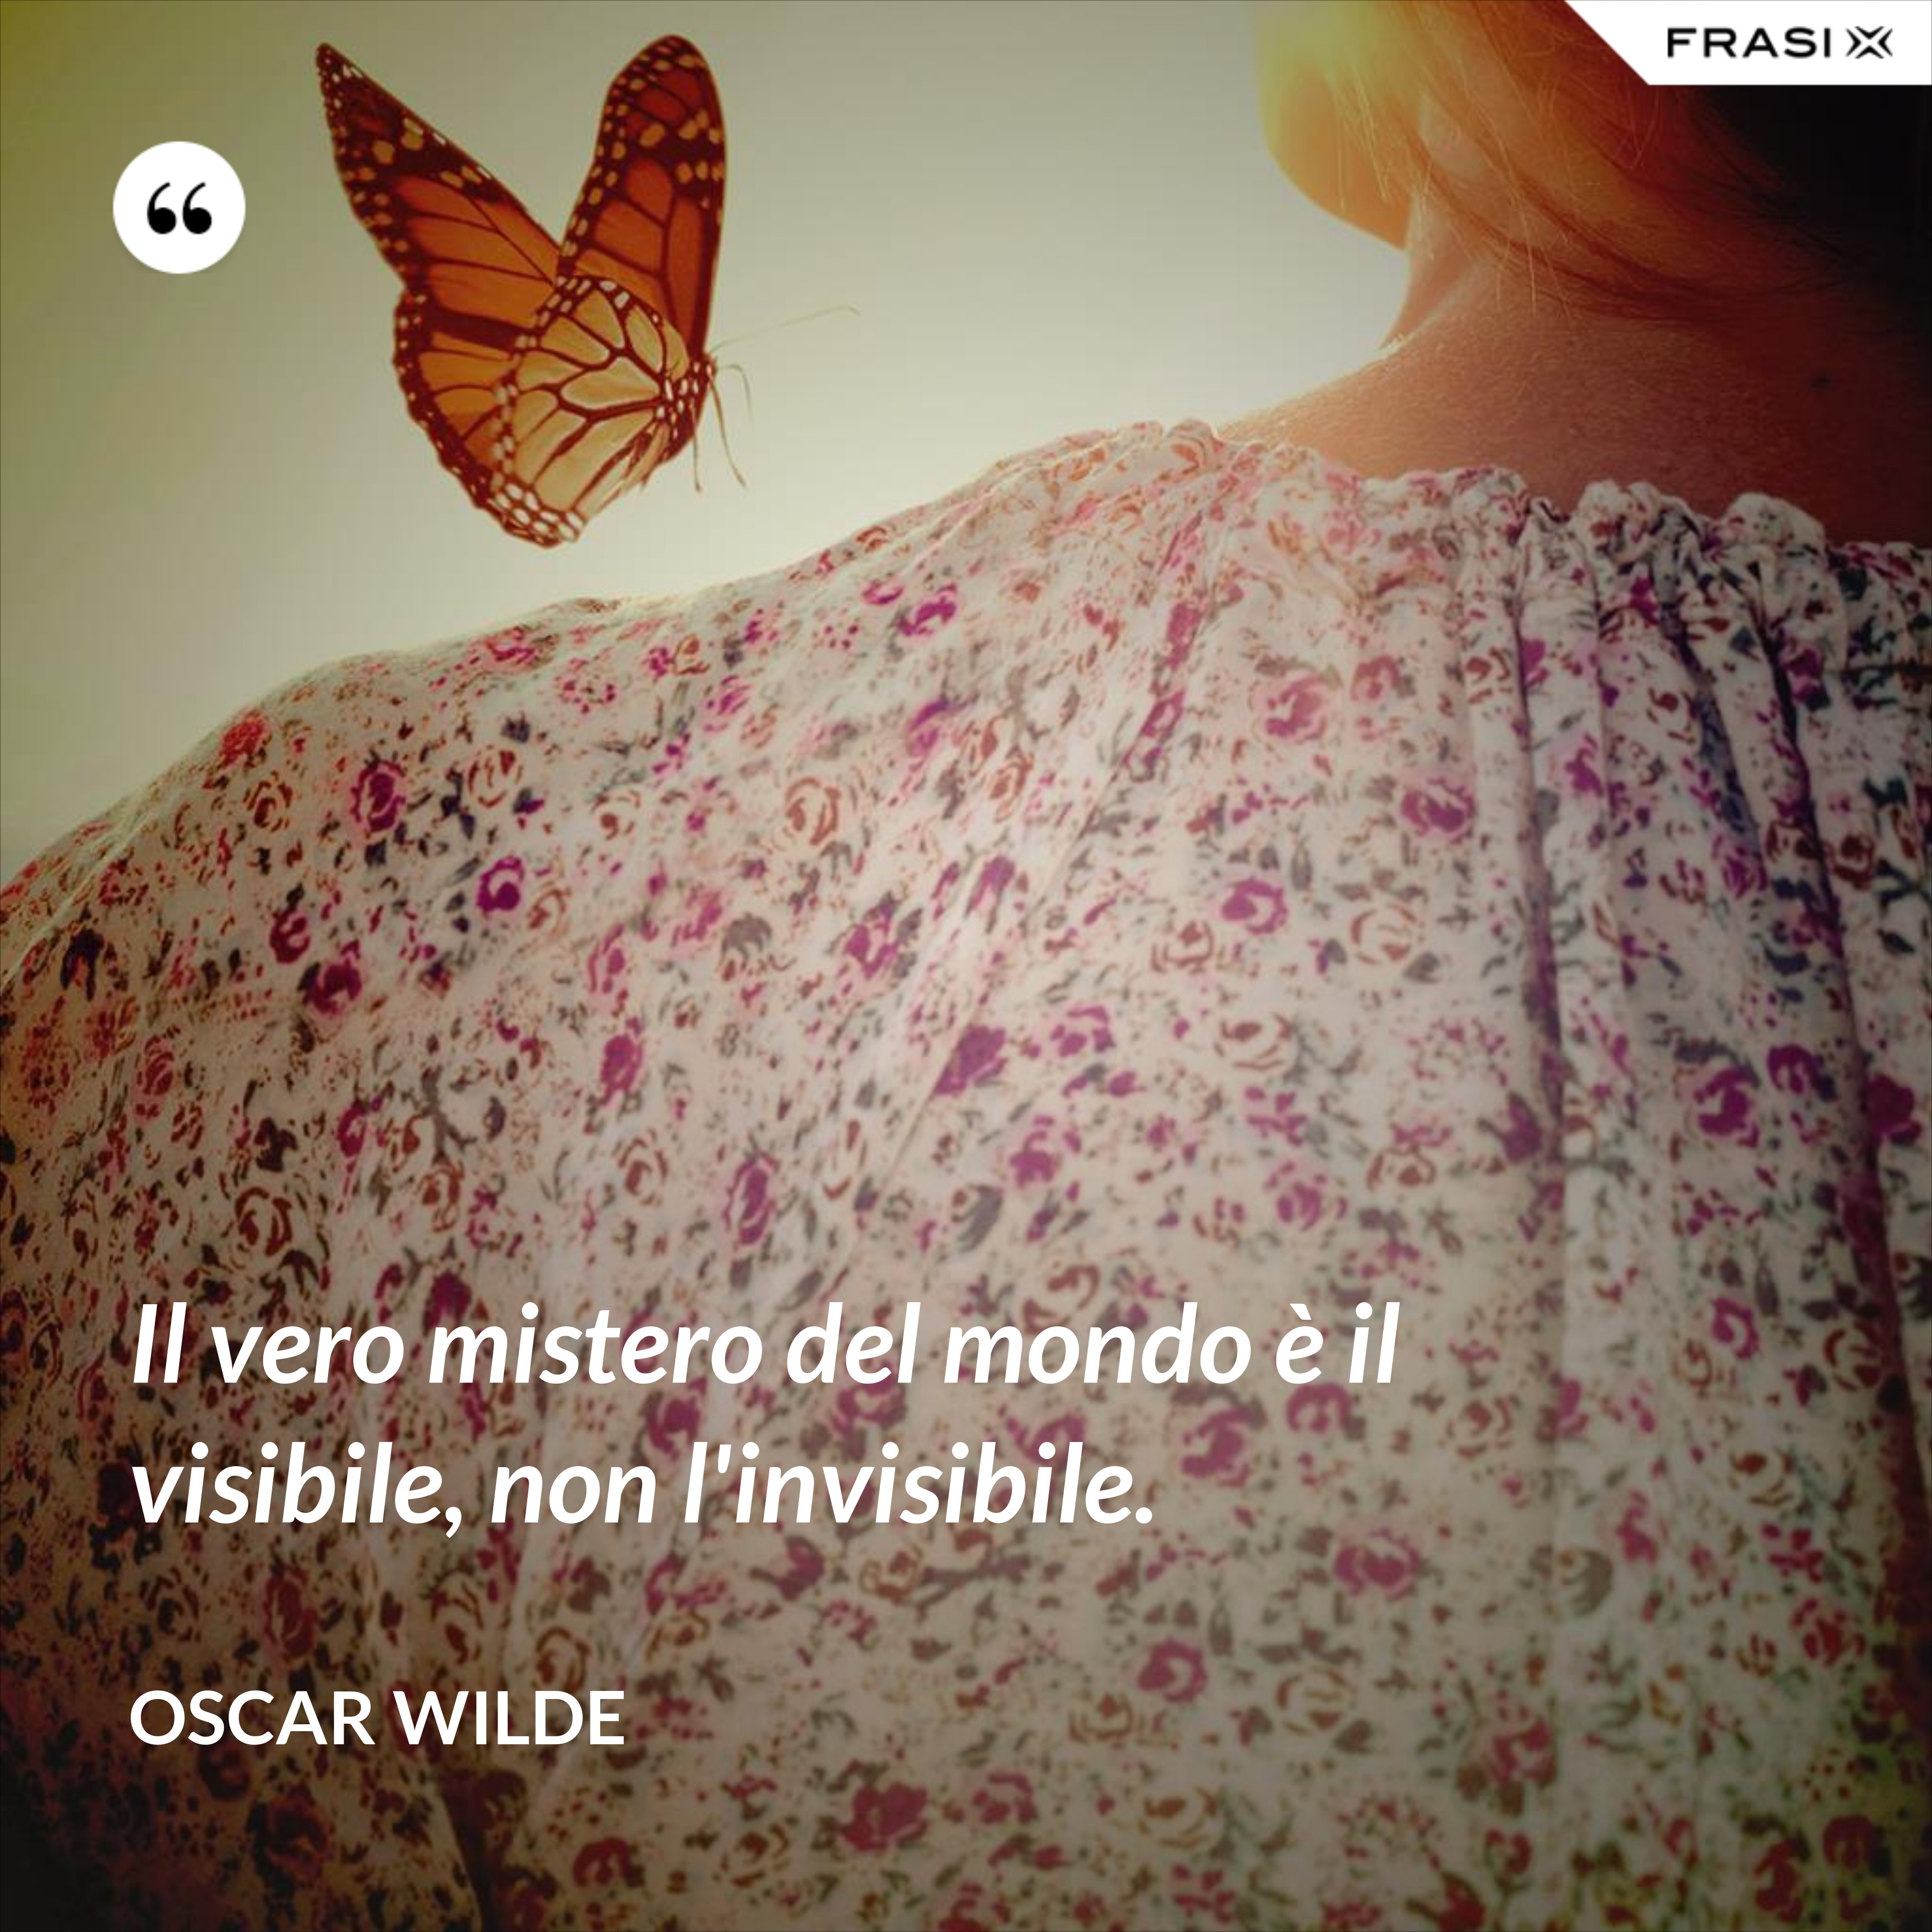 Il vero mistero del mondo è il visibile, non l'invisibile. - Oscar Wilde